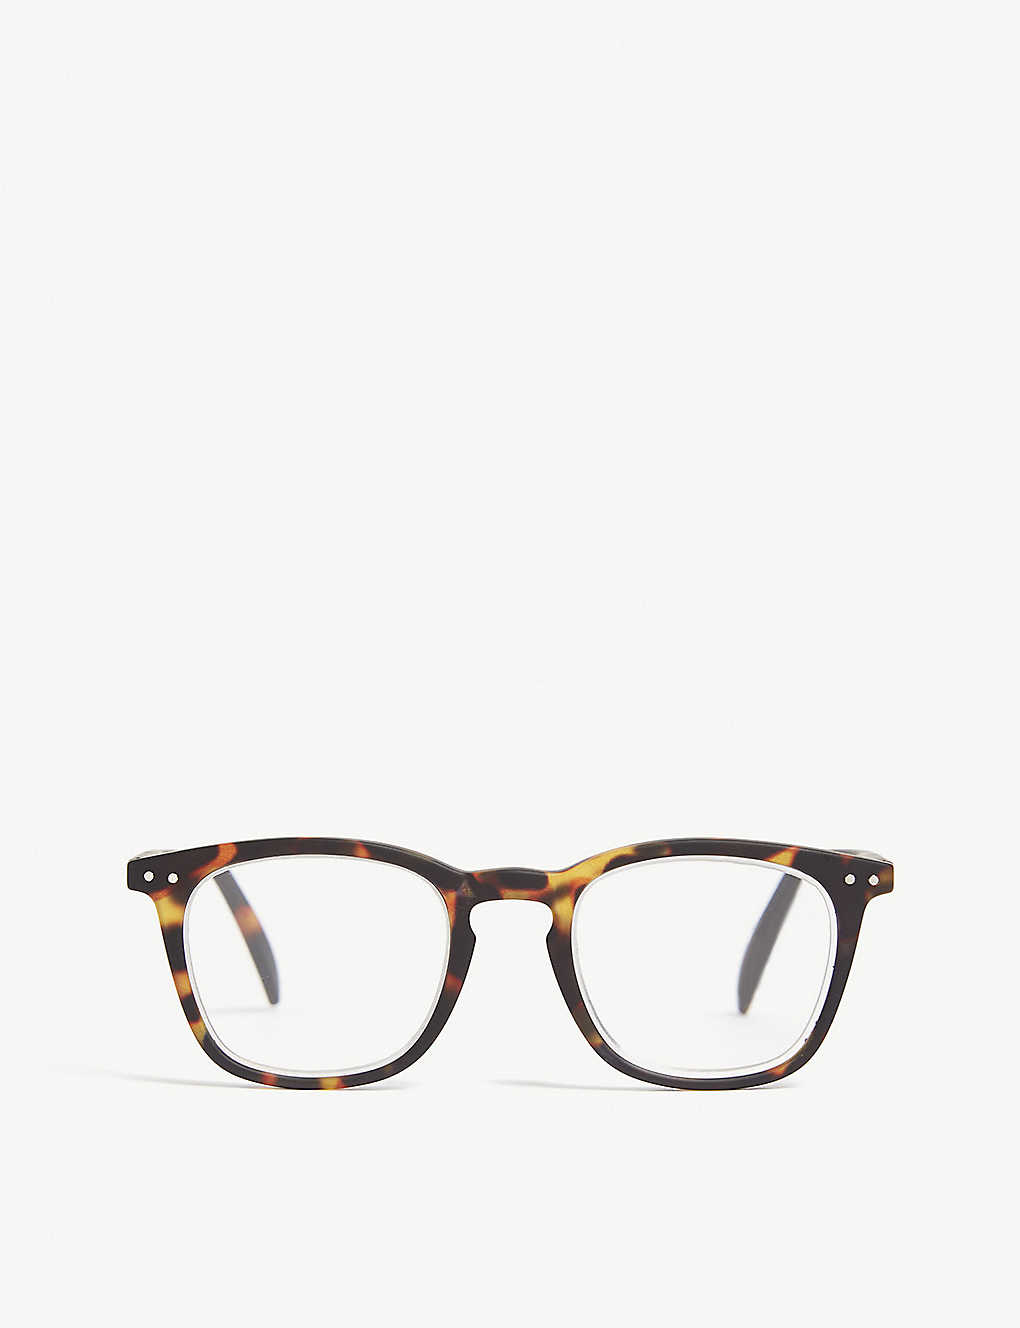 Izipizi Mens Brown And Black #e Reading Square-frame Glasses +2